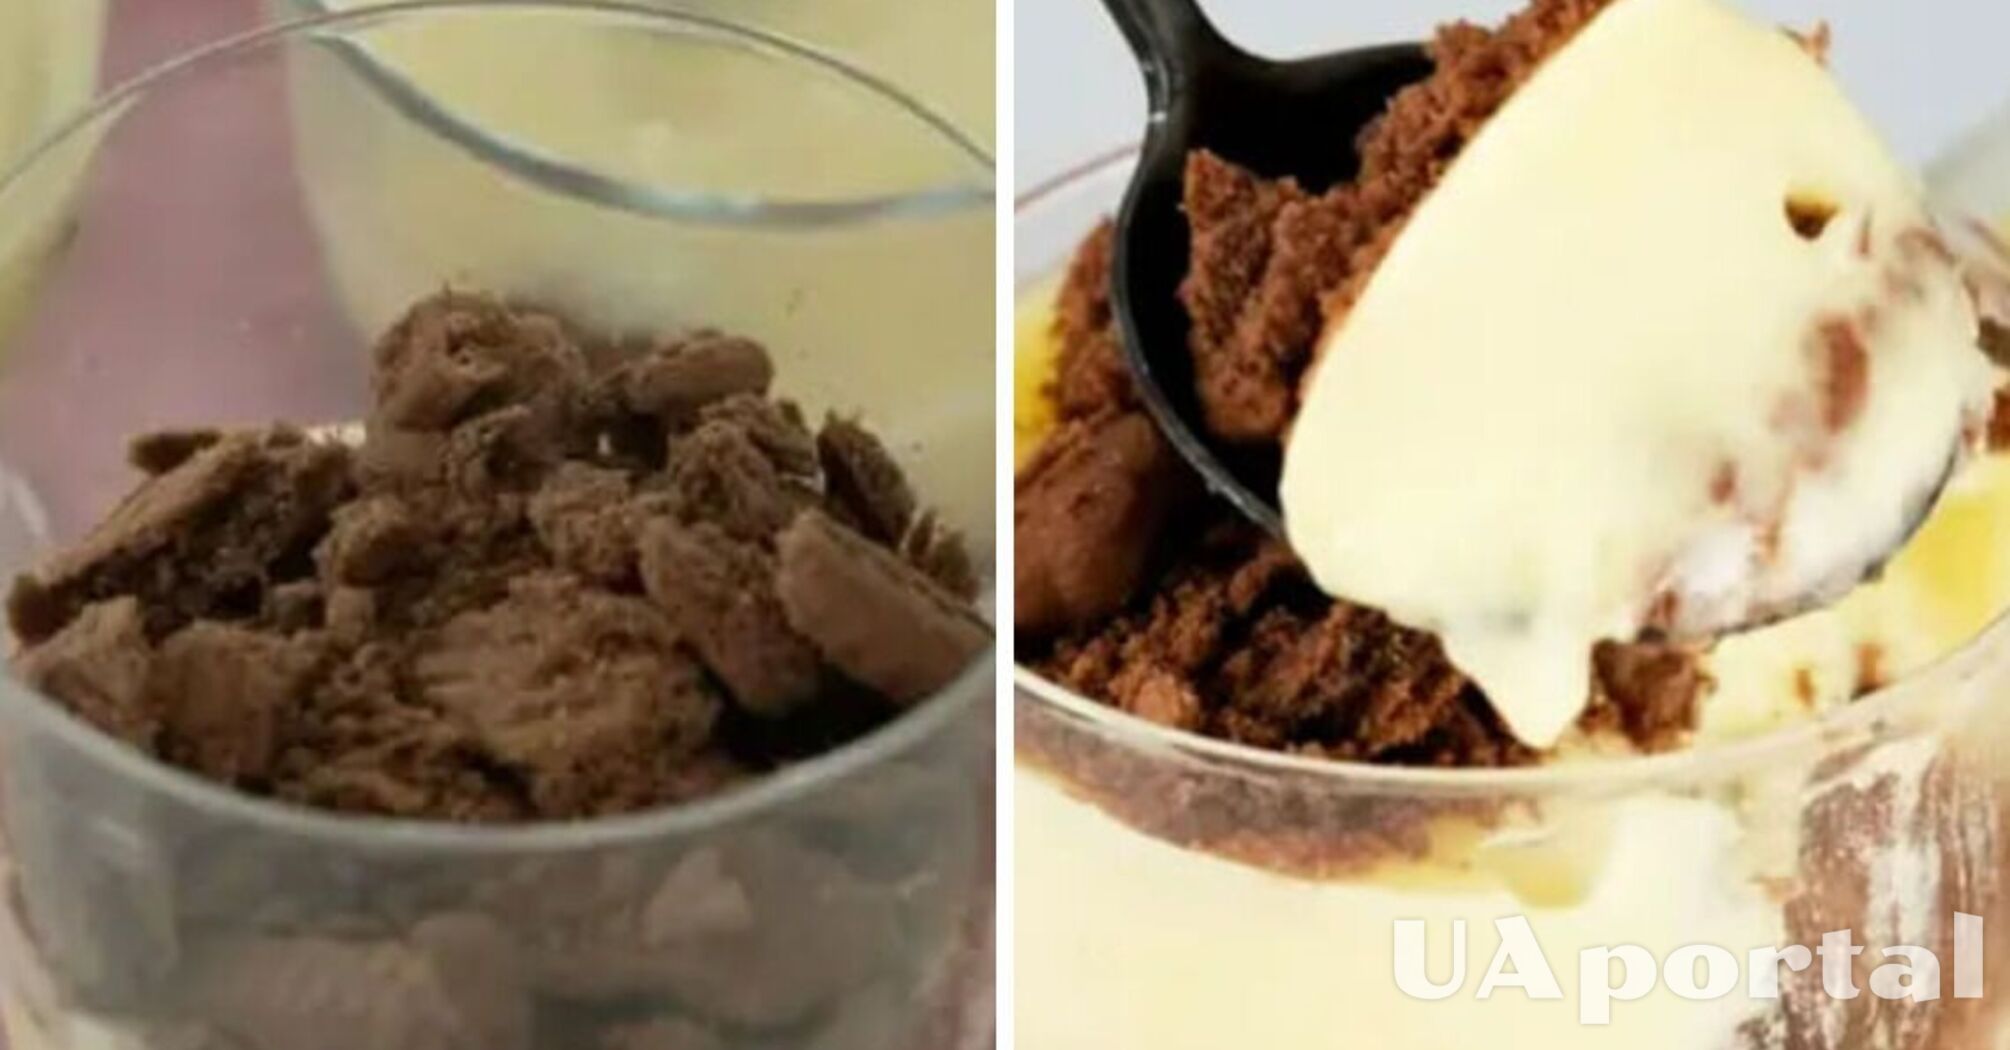 How to make a budget-friendly dessert similar to tiramisu